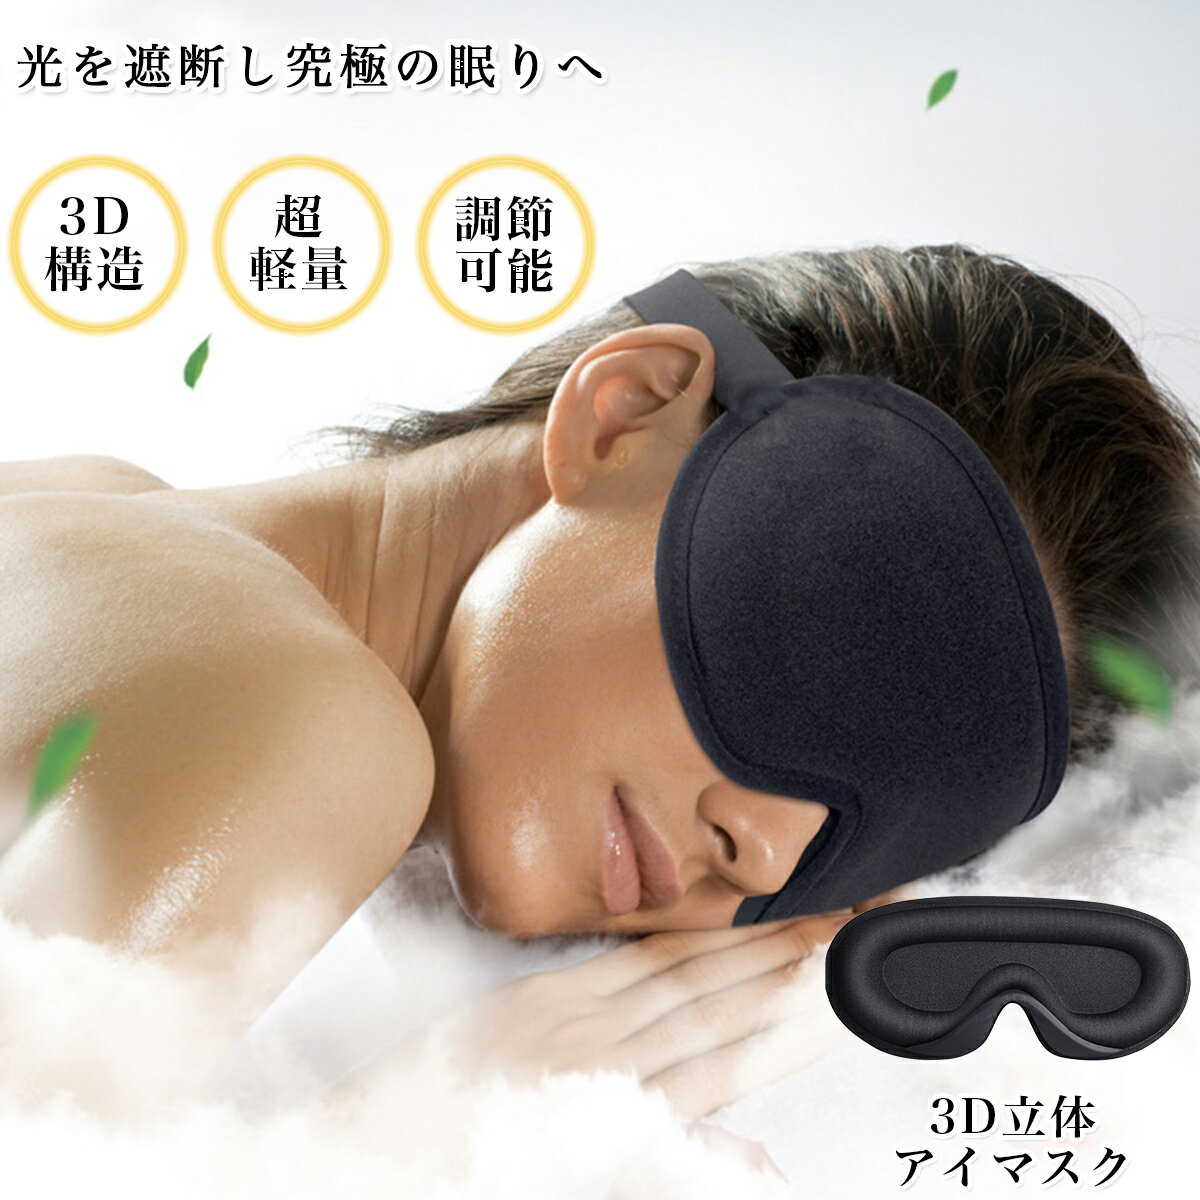 アイピロー（1000円程度） アイマスク シルク 睡眠 痛くない かわいい 睡眠 高級 取れにくい 耳かけ 3D 立体型 遮光 安眠 繰り返し使える 快眠 おやすみ 就寝 リラックス 睡眠用 眼精疲労 アイピロー 快眠グッズ 男女兼用 目隠し